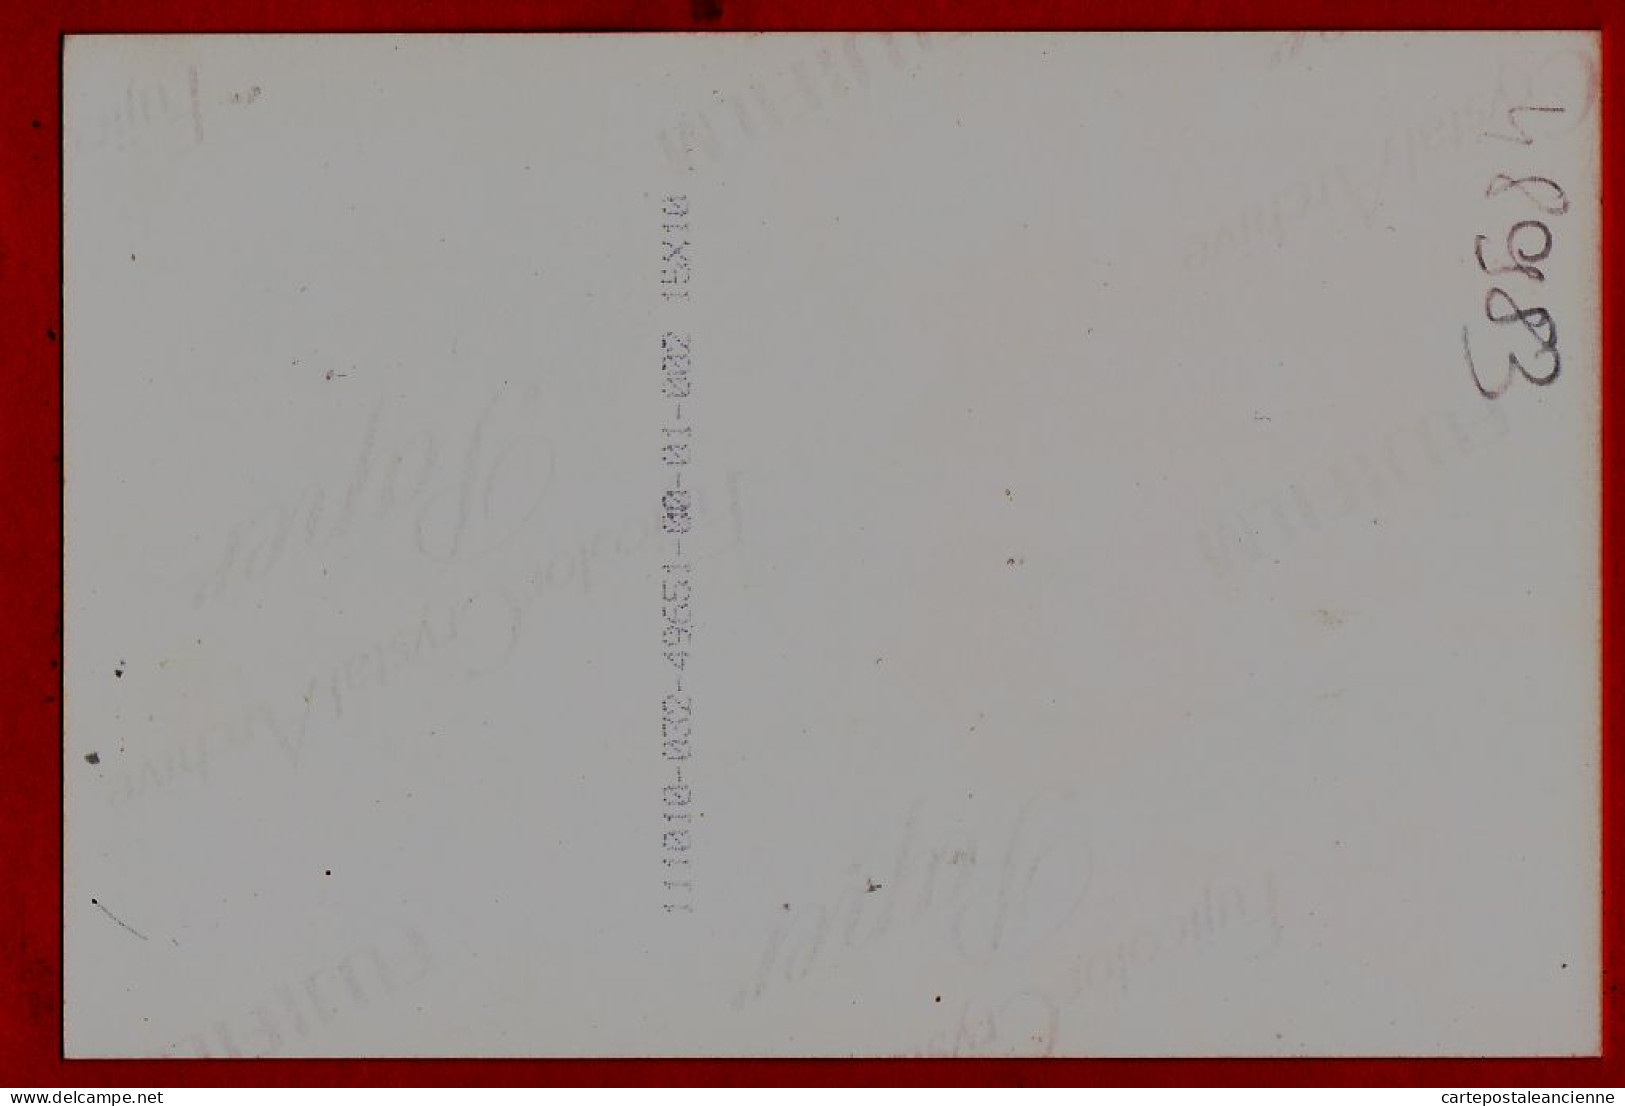 05234 ● SYLVIE VARTAN Tee-shirt Aigle Américain 1985s Photographie Sur Papier Fujifilm 10x15cm - Singers & Musicians